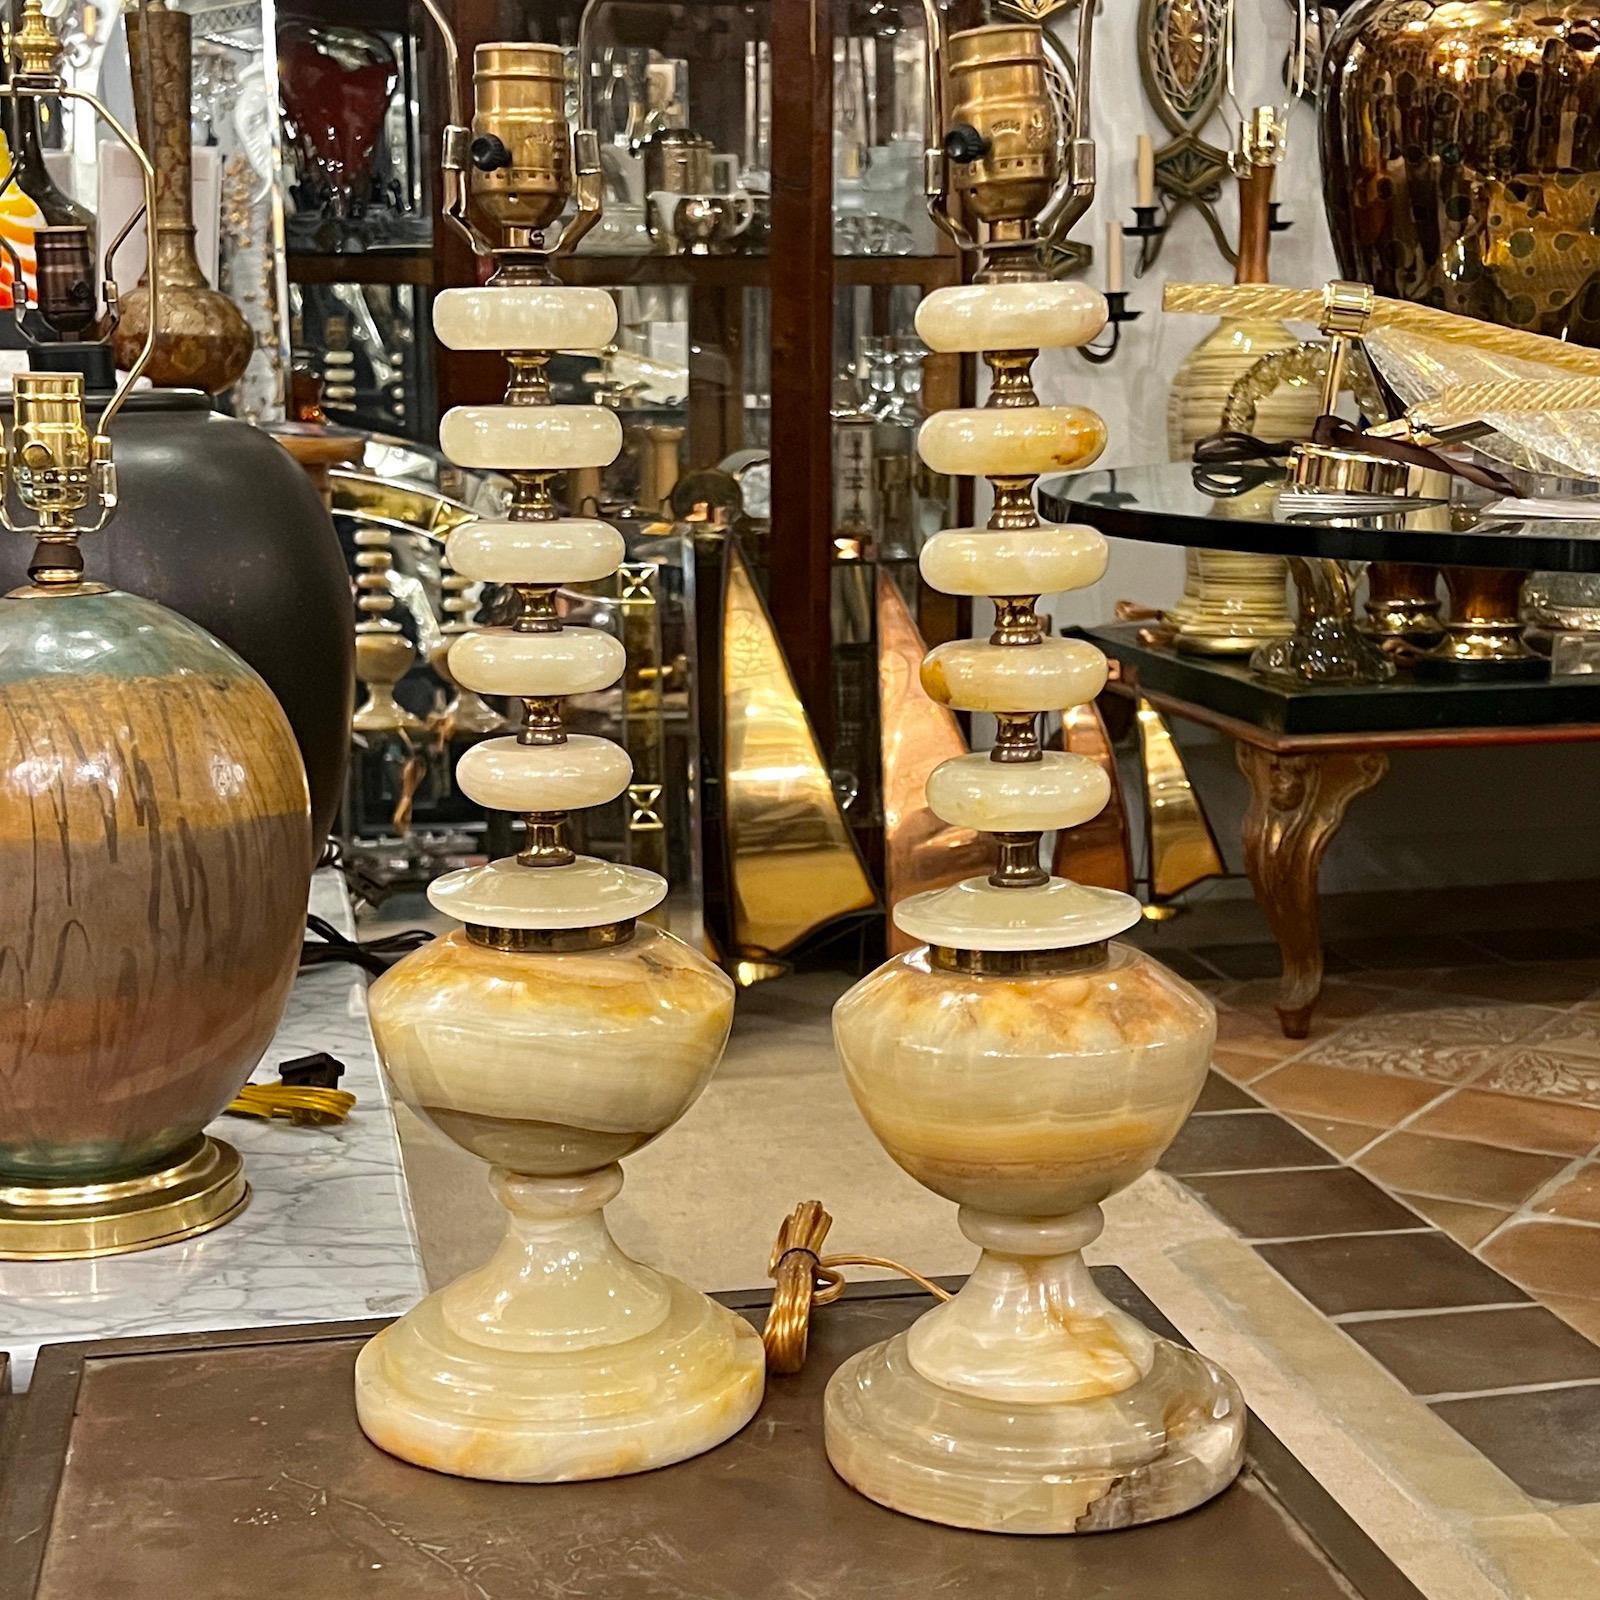 Paire de lampes de table italiennes en onyx avec éléments en laiton datant des années 1940.

